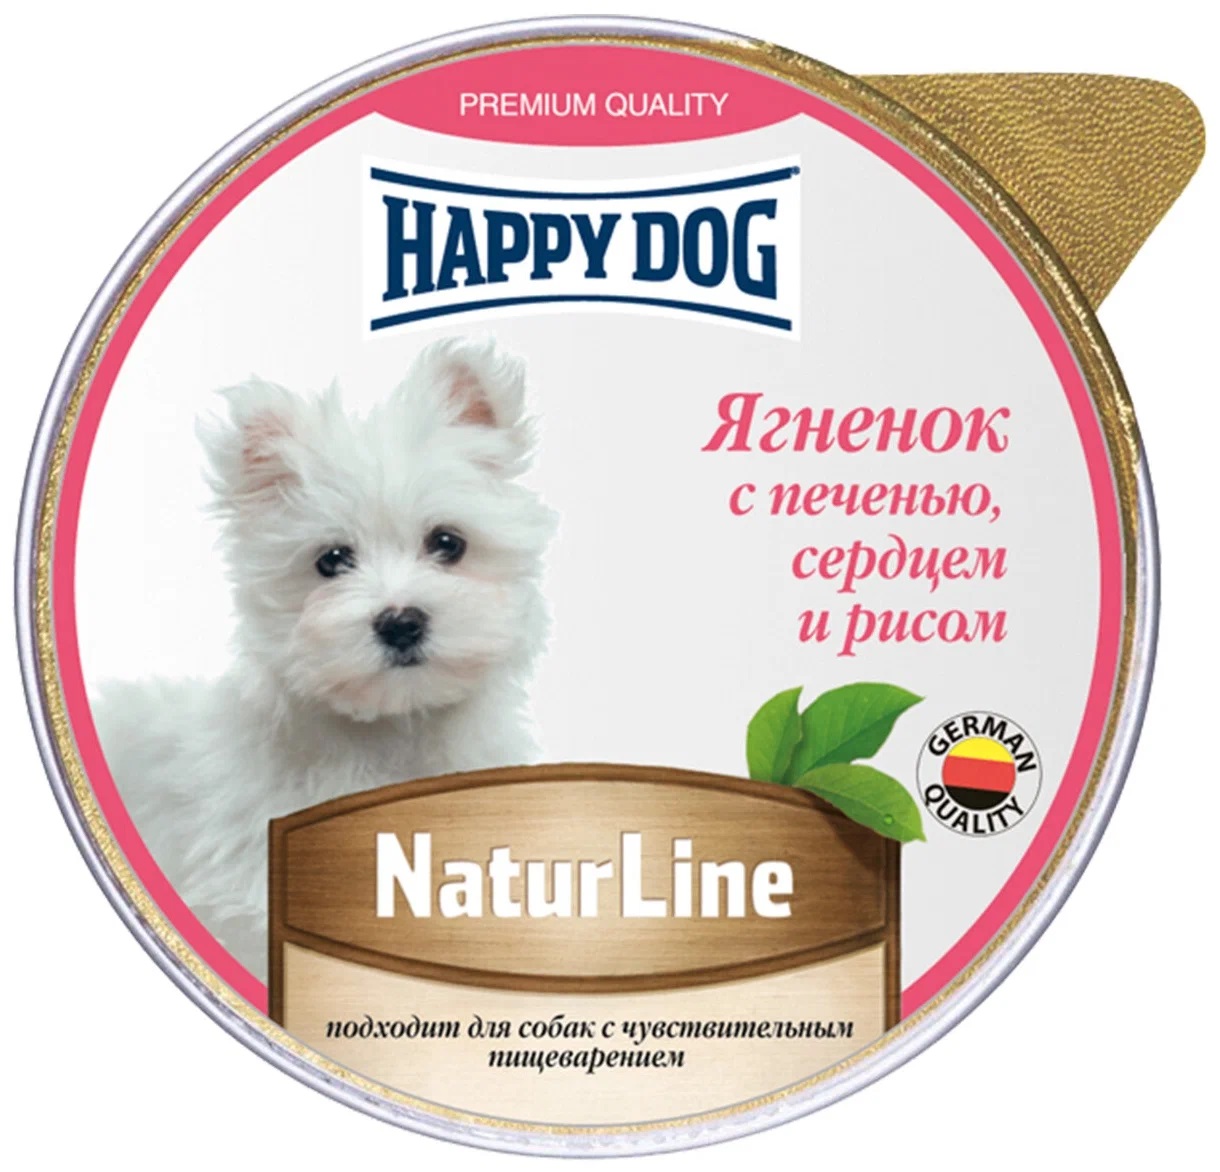 Корм для собак Happy dog natur line паштет 125 г ягненок с печенью, сердцем и рисом